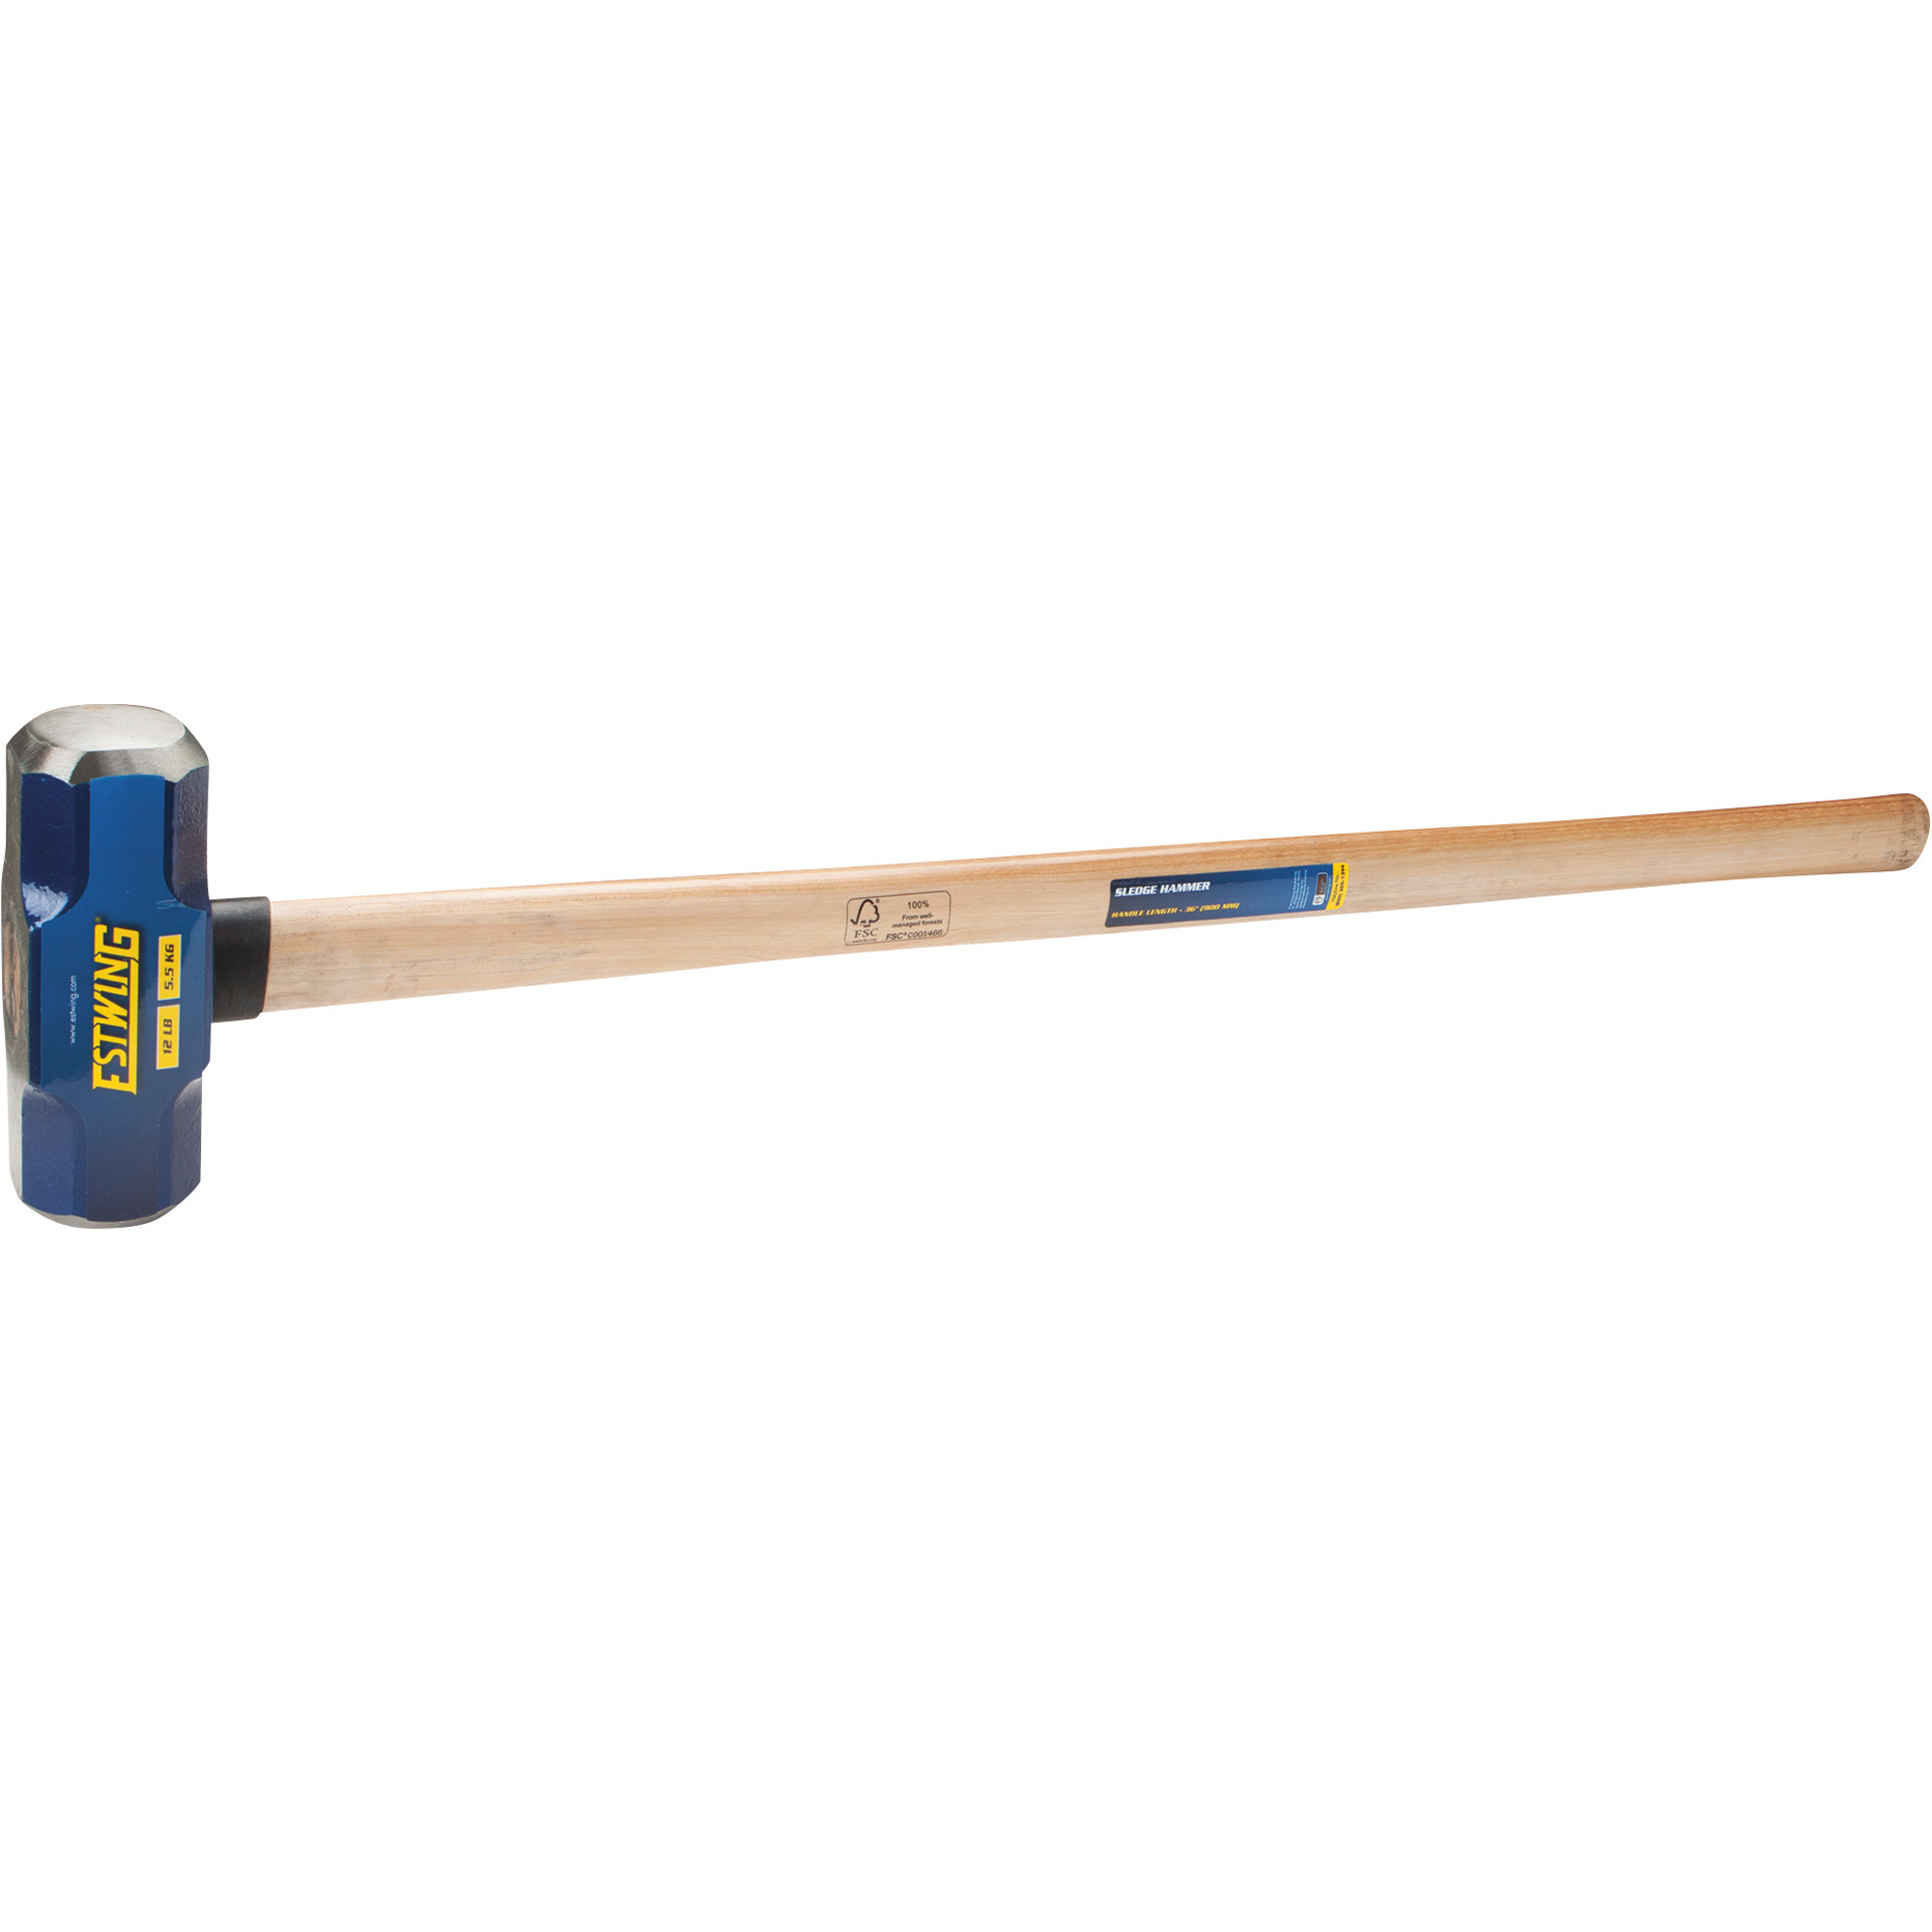 Estwing Sledge Hammer with Wood Handle, 12-Lb., 36Inch L, Model ESH-1236W